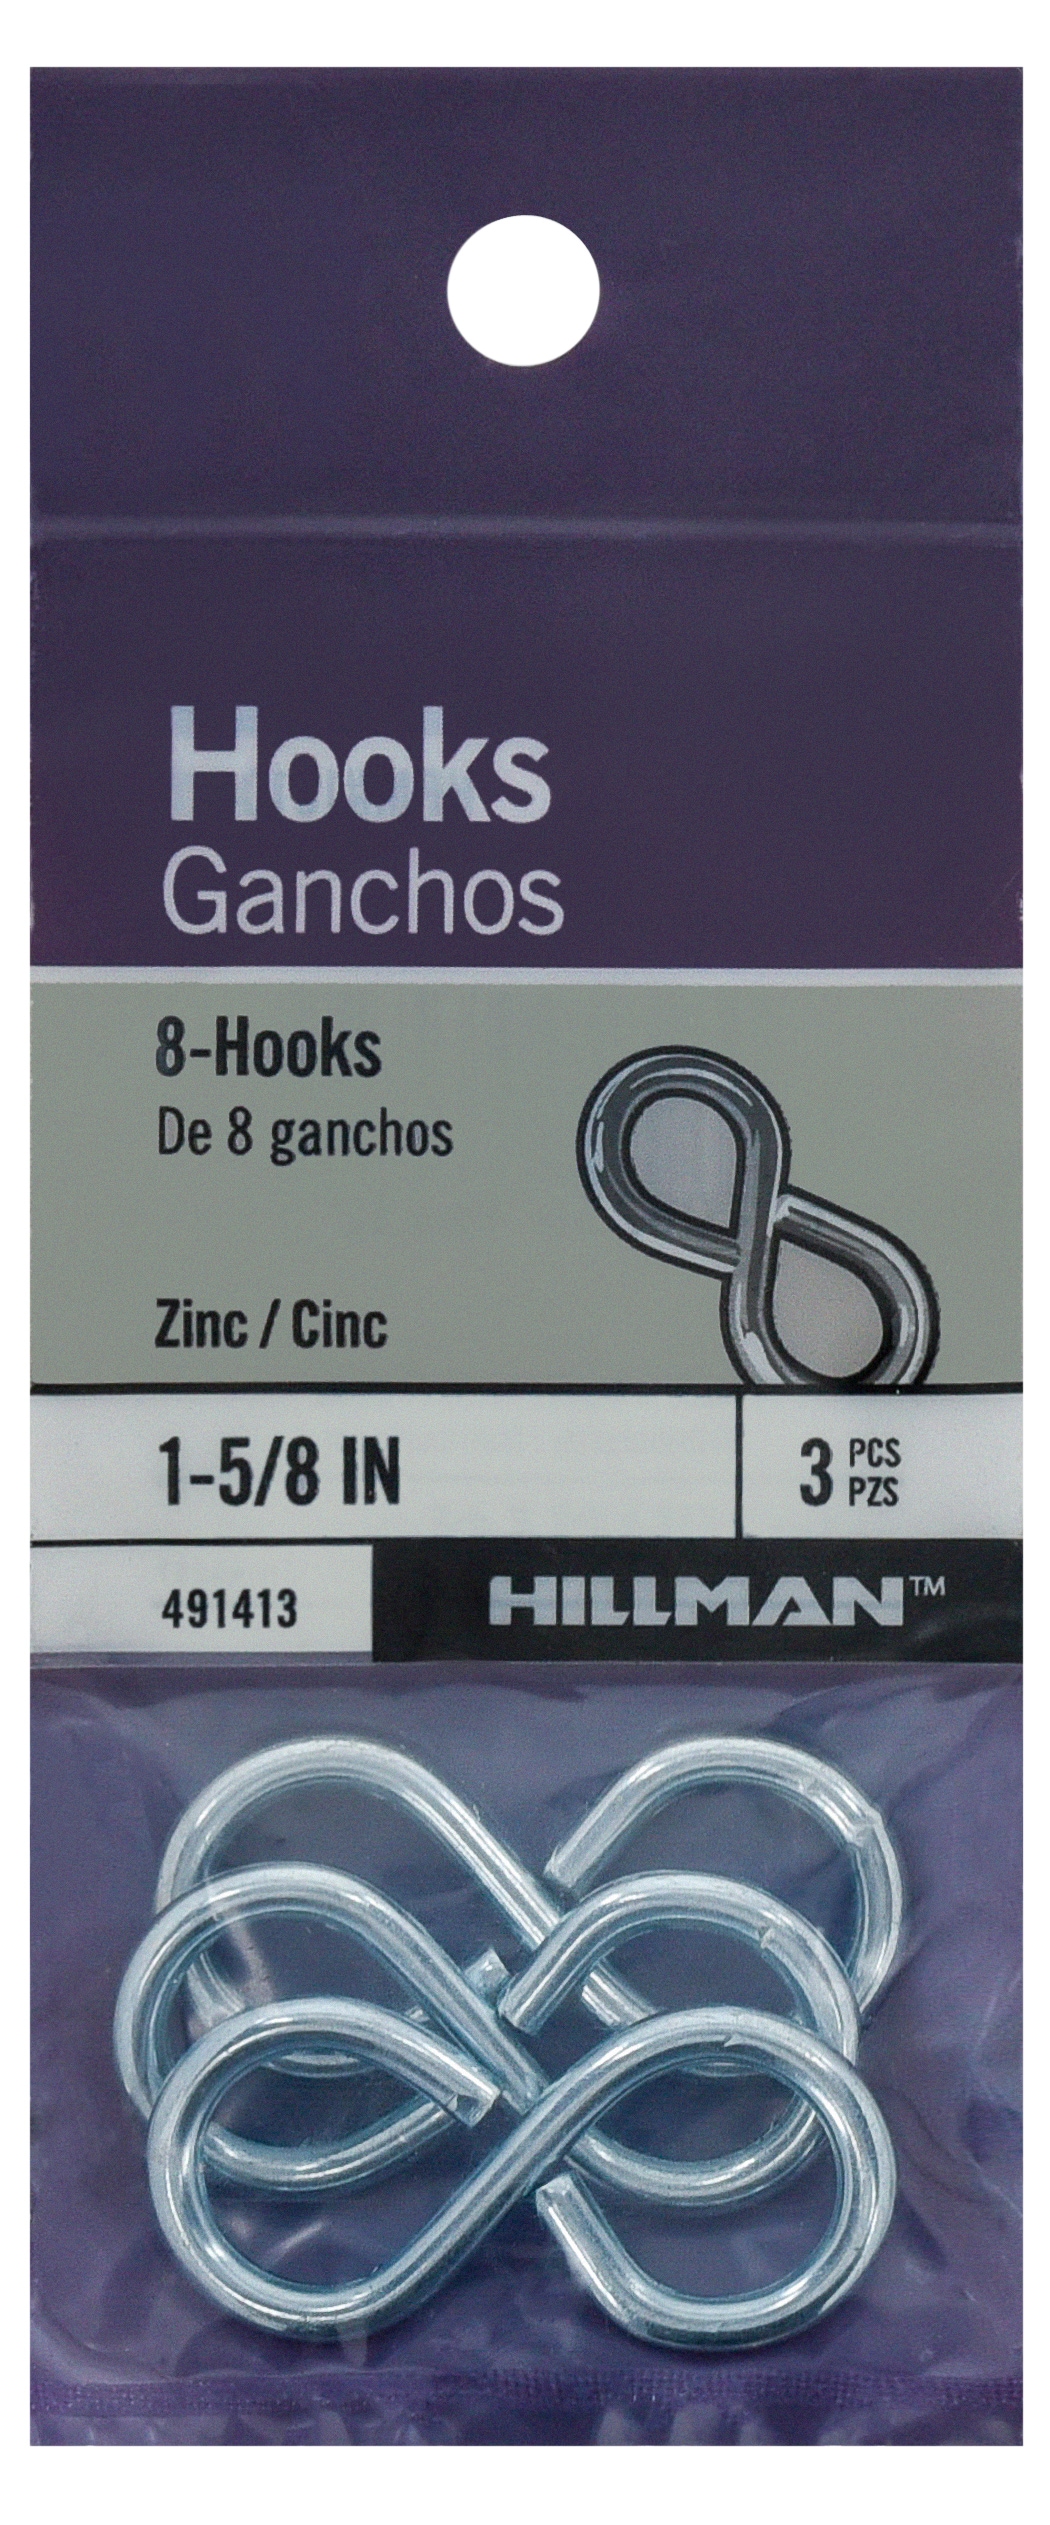 Hillman 0.135-in Zinc-plated Steel S-hook (3-Pack) in the Hooks